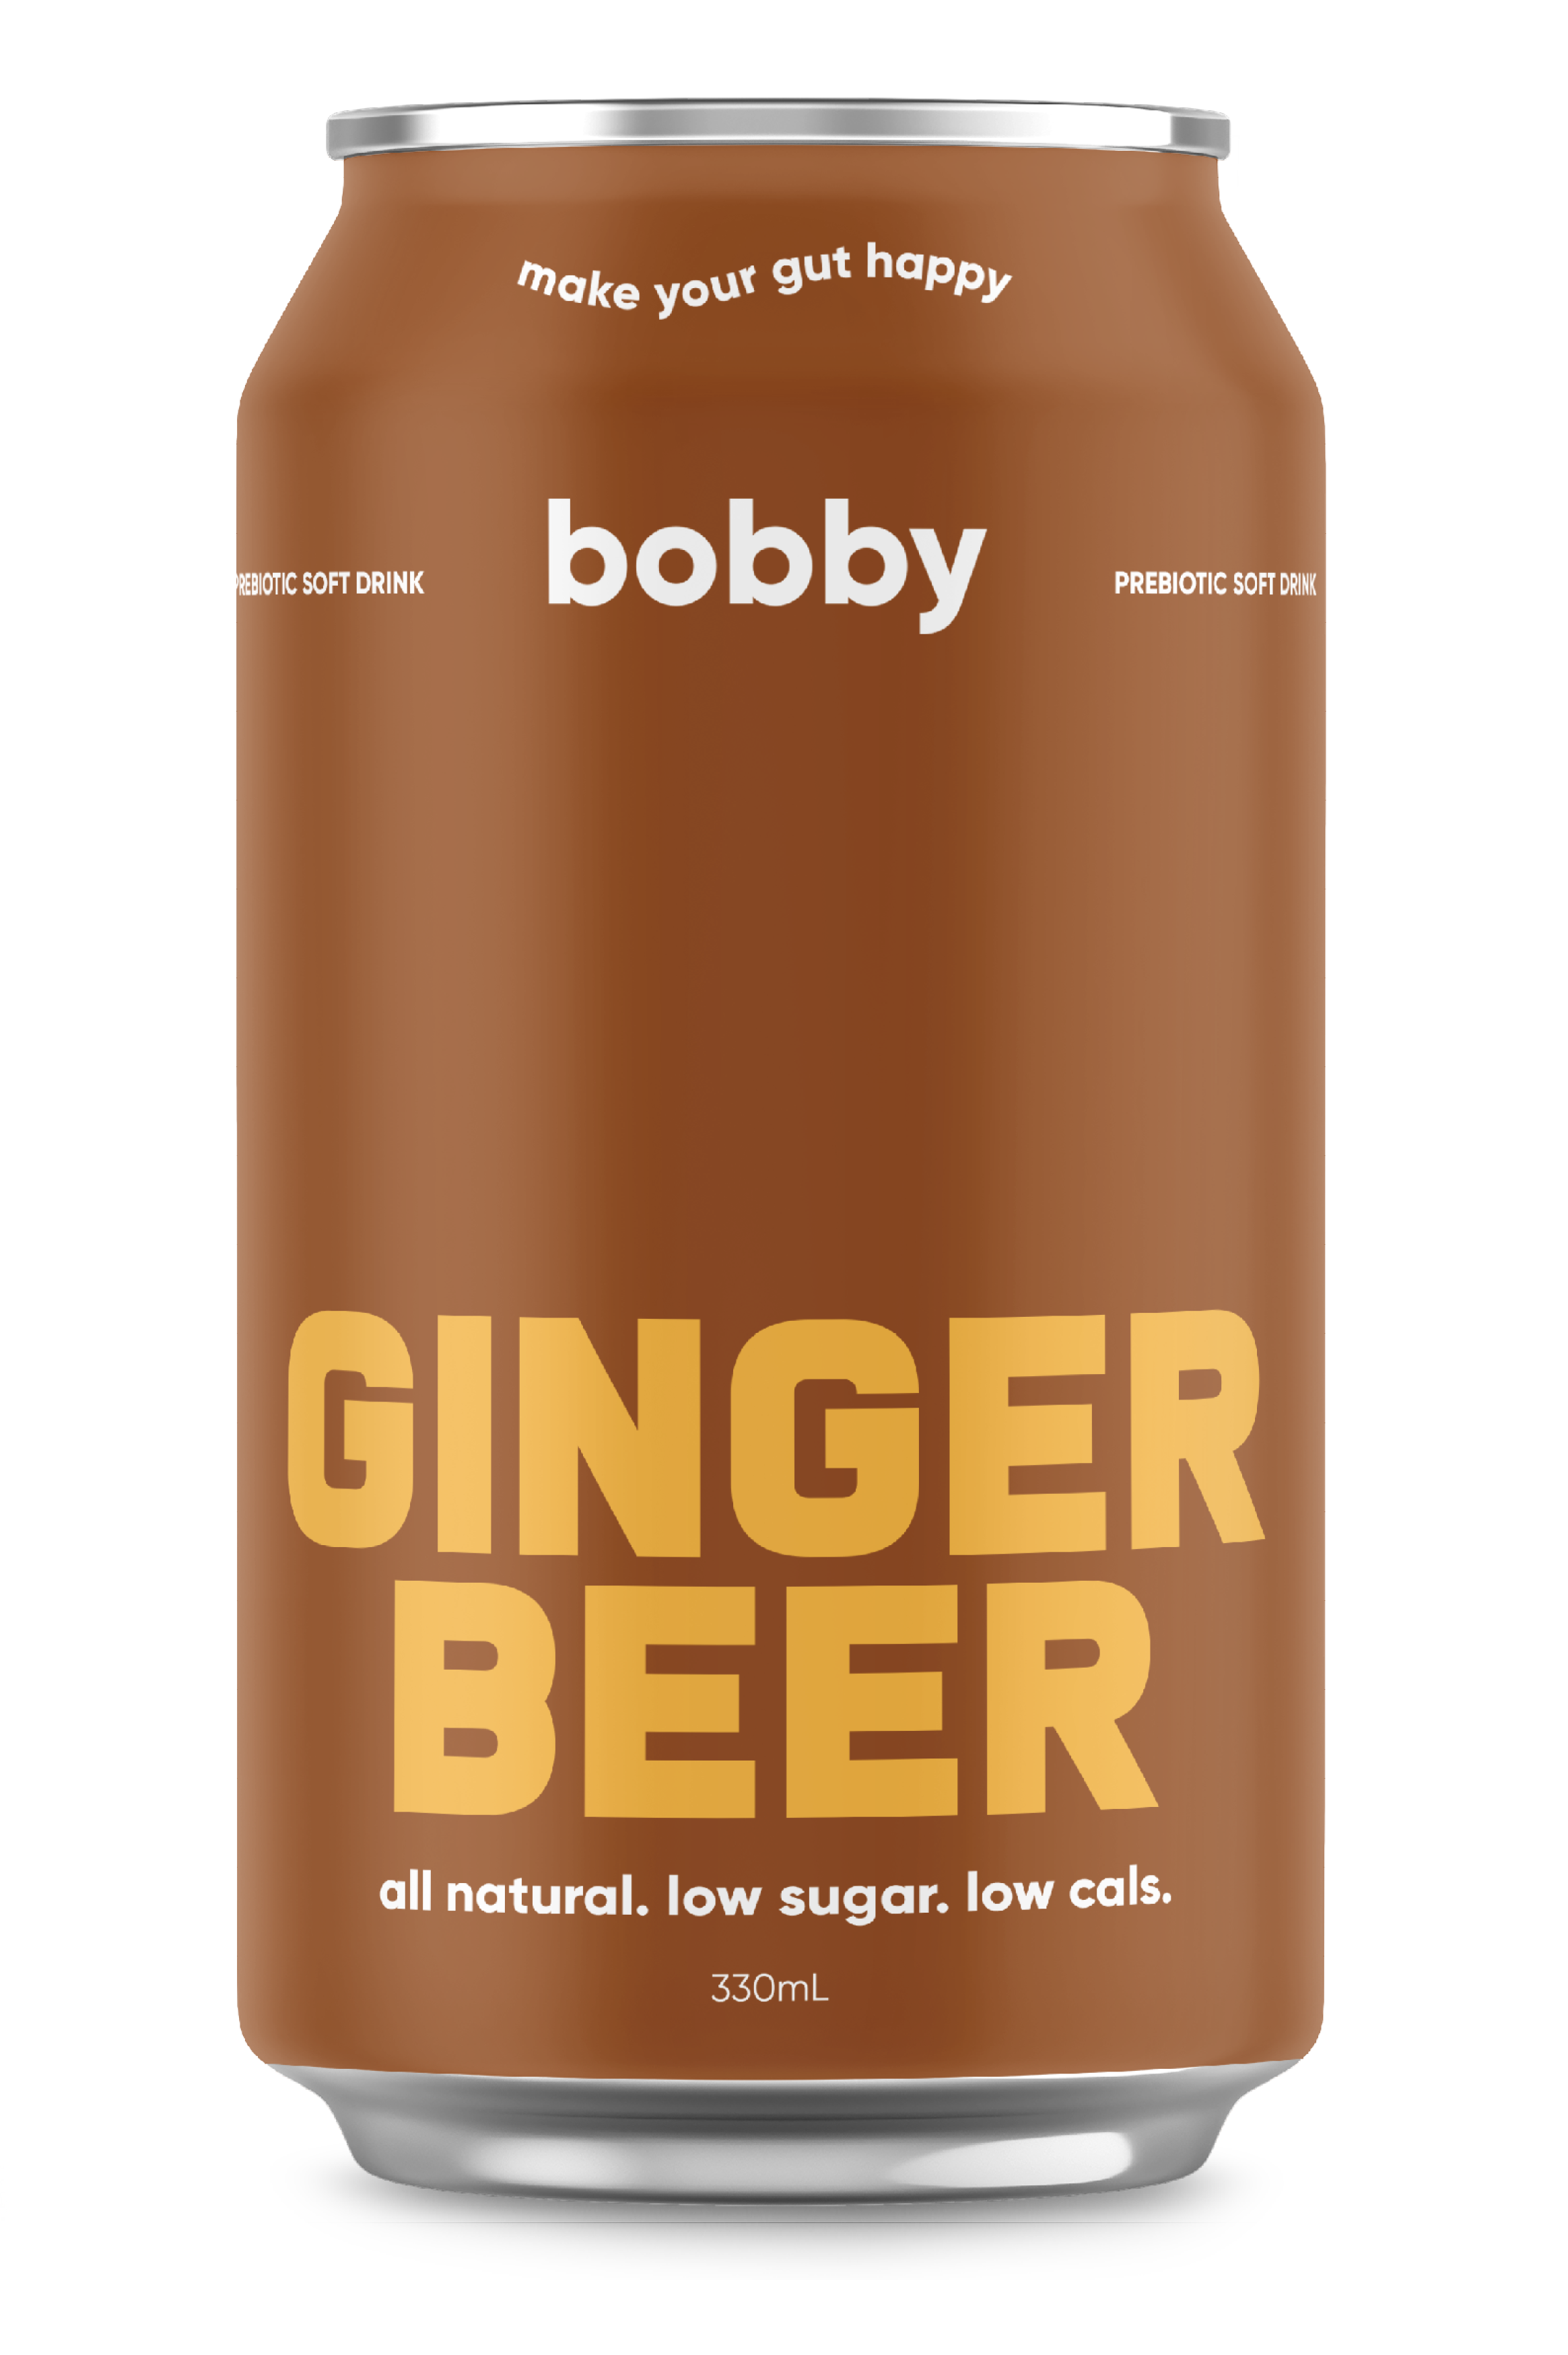 GINGER BEER – Bobby